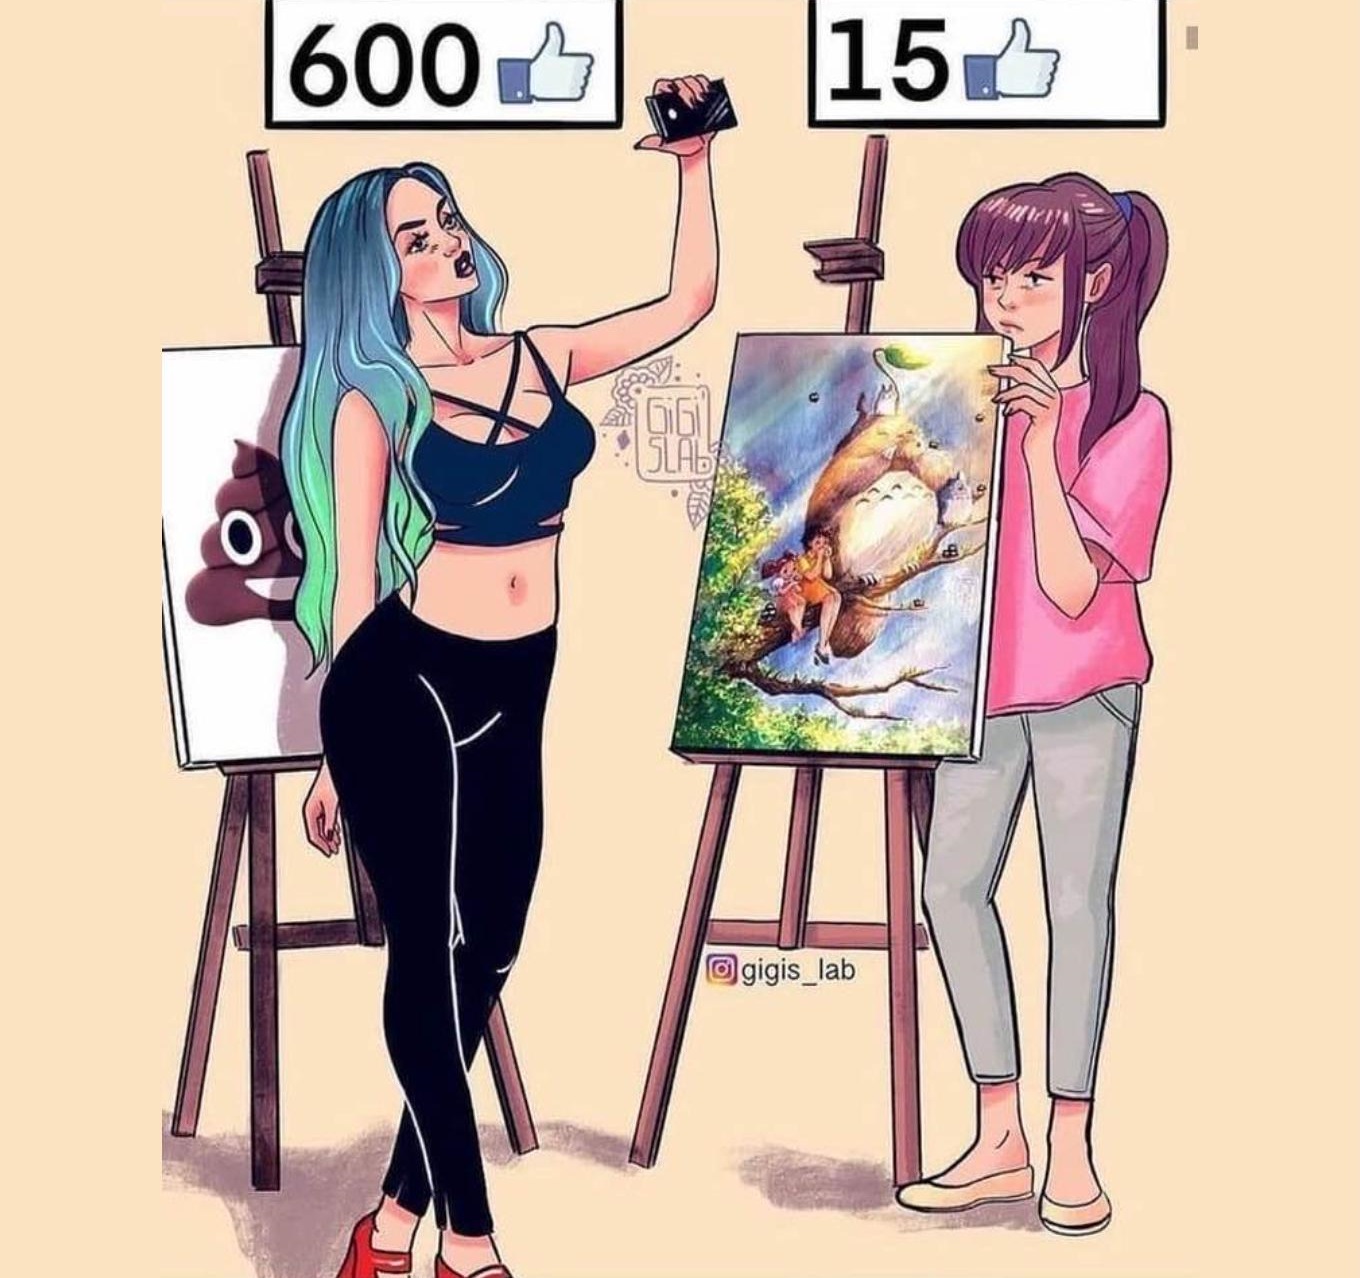 Painting vs Selfie Likes